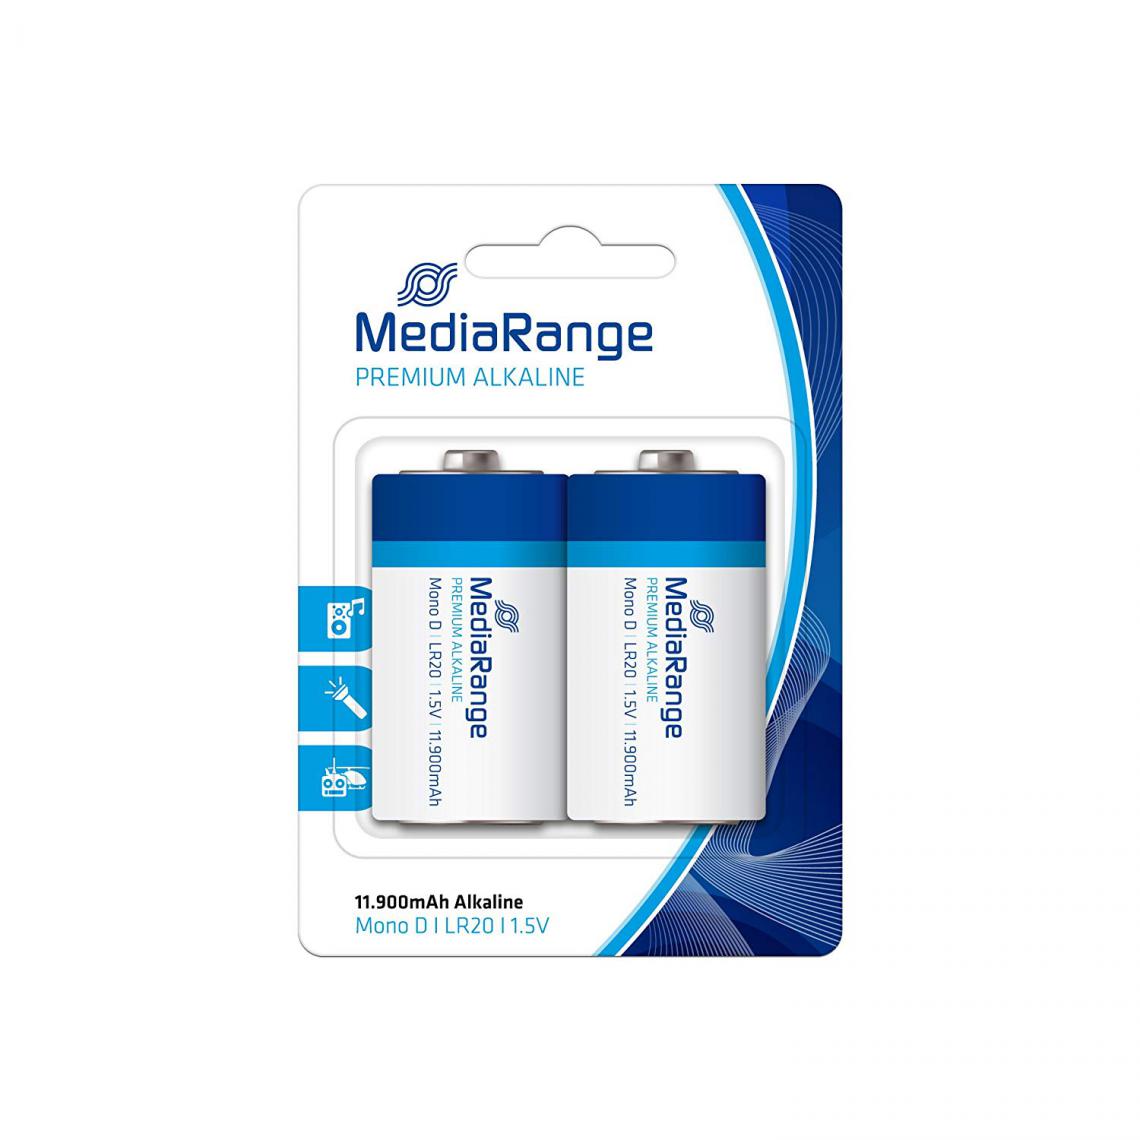 Mediarange - Pack de 2 piles premium Alkaline Mediarange Mono D LR20 1.5V - Piles spécifiques